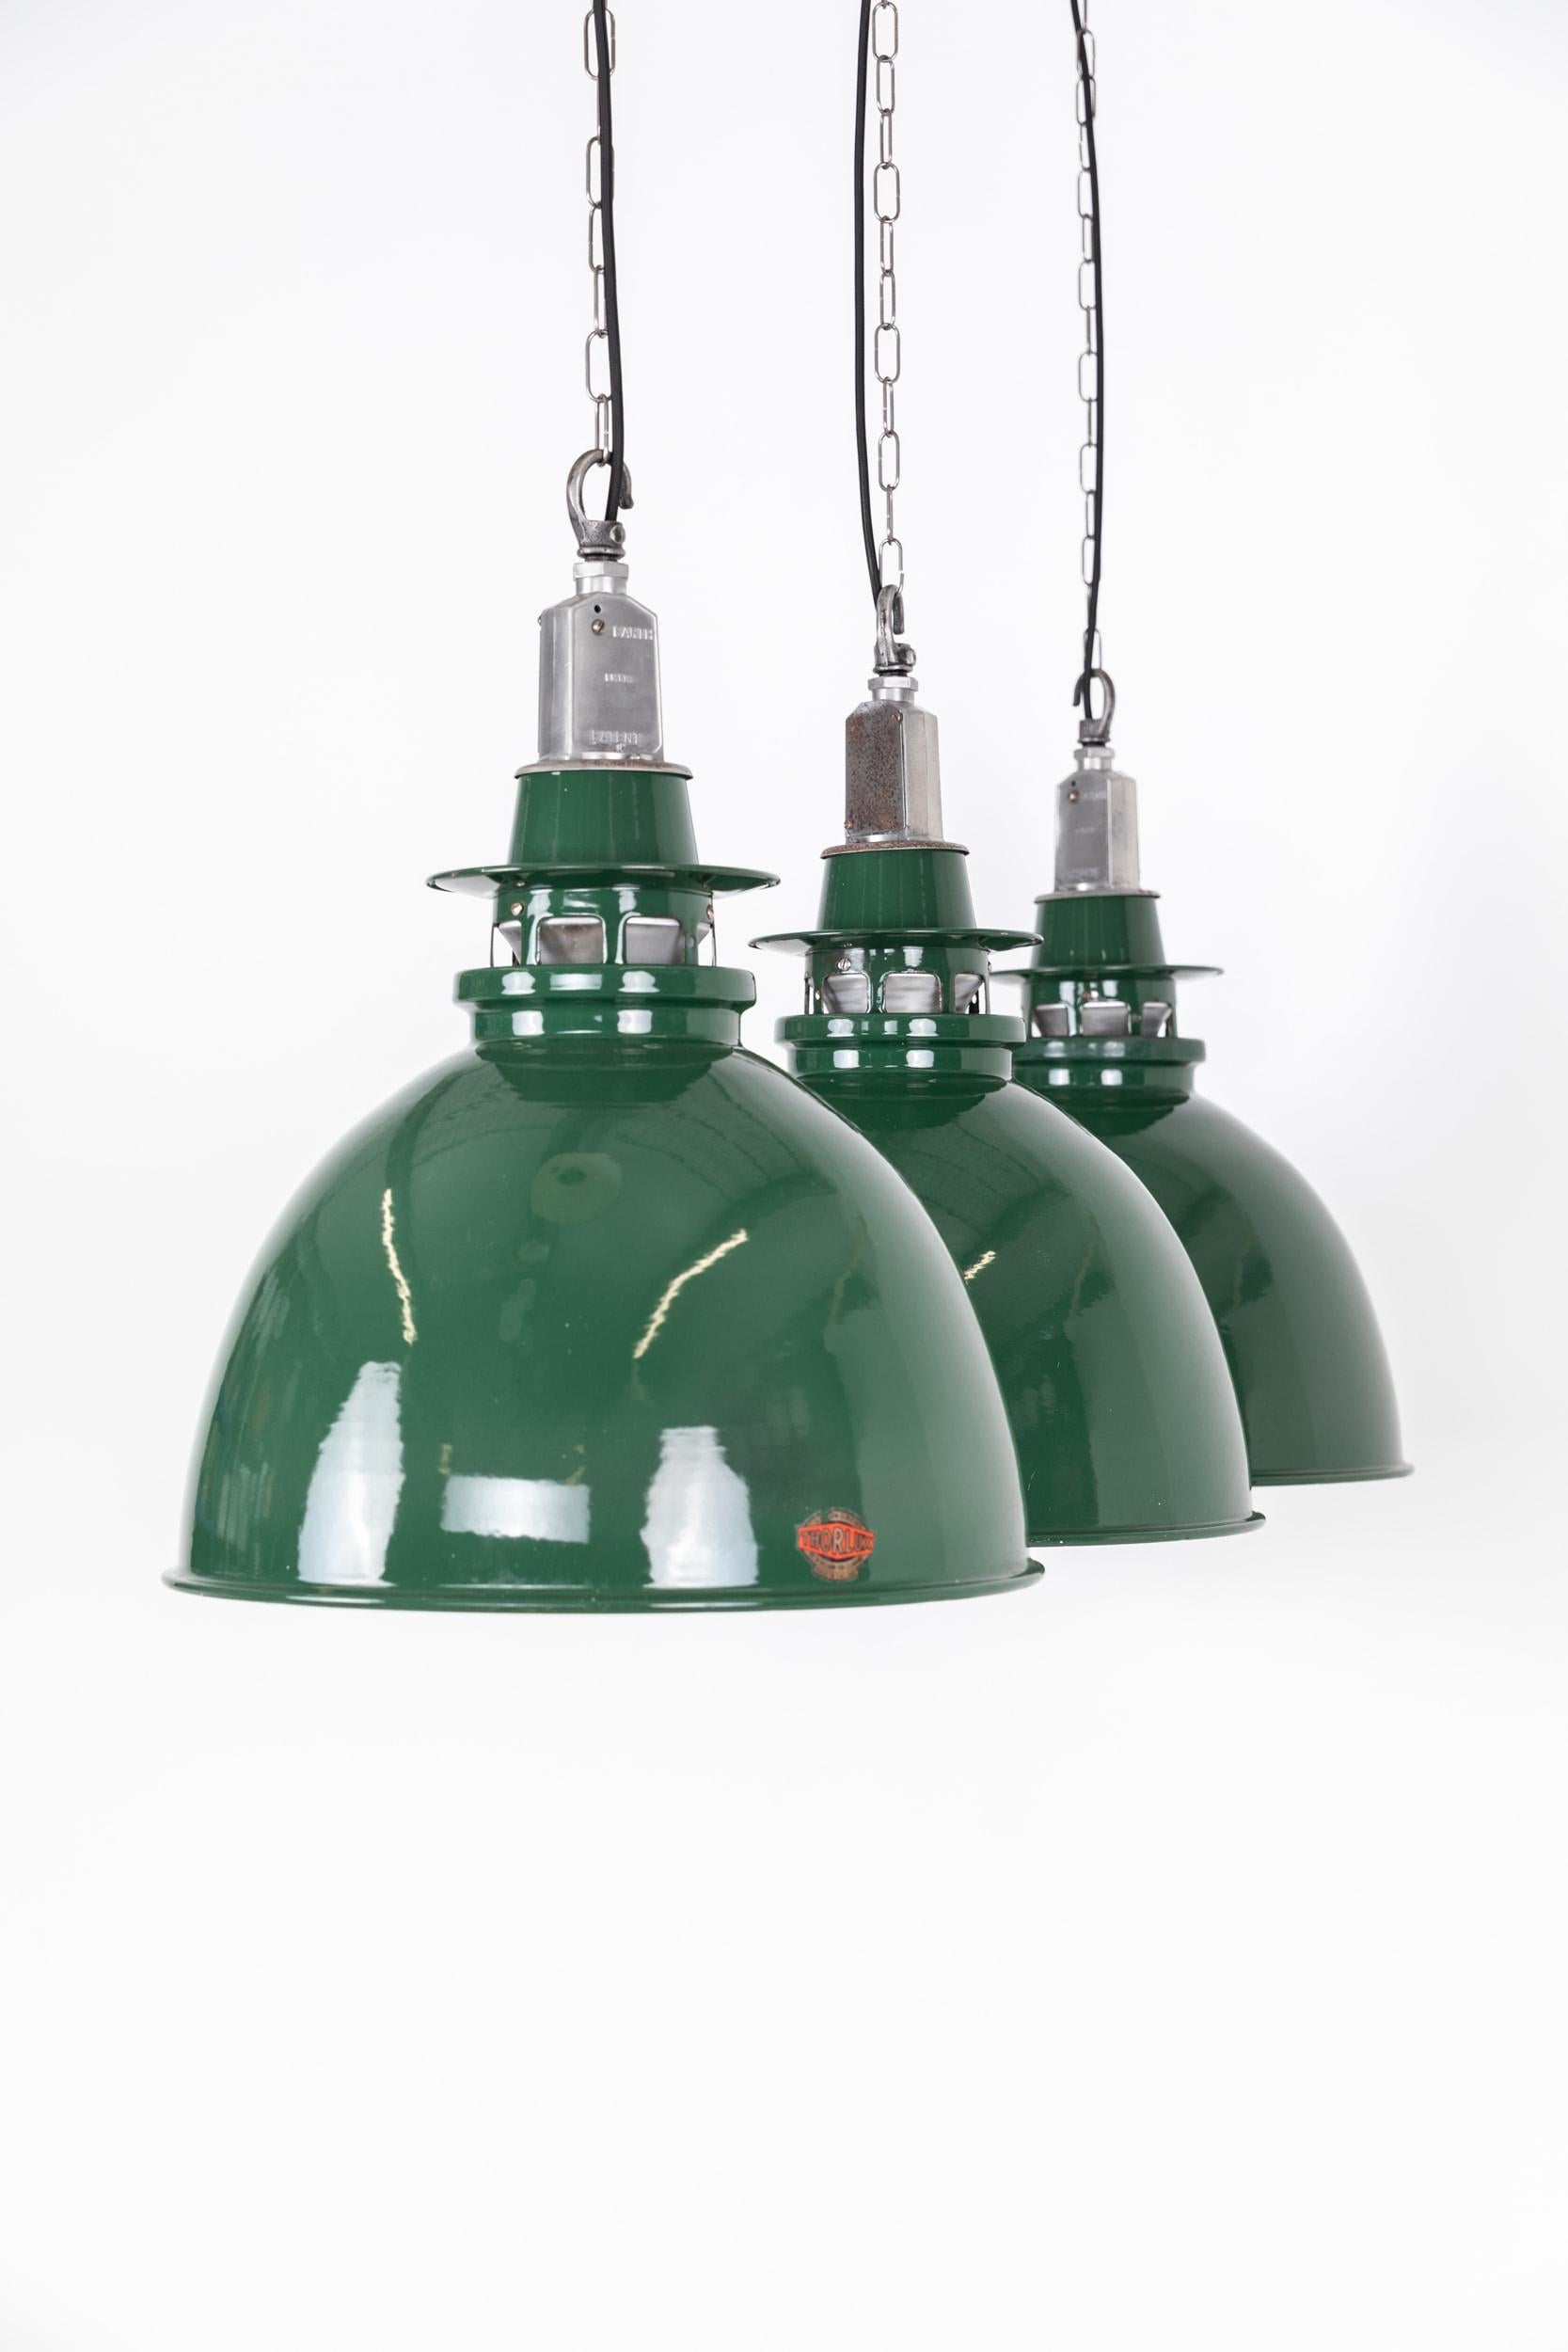 Une série de lampes suspendues en émail vitreux vert par les fabricants de luminaires renommés Thorlux. C.C.

Ombres émaillées en deux parties, dans l'ensemble en très bon état d'origine, avec seulement quelques marques liées à l'âge et des galeries